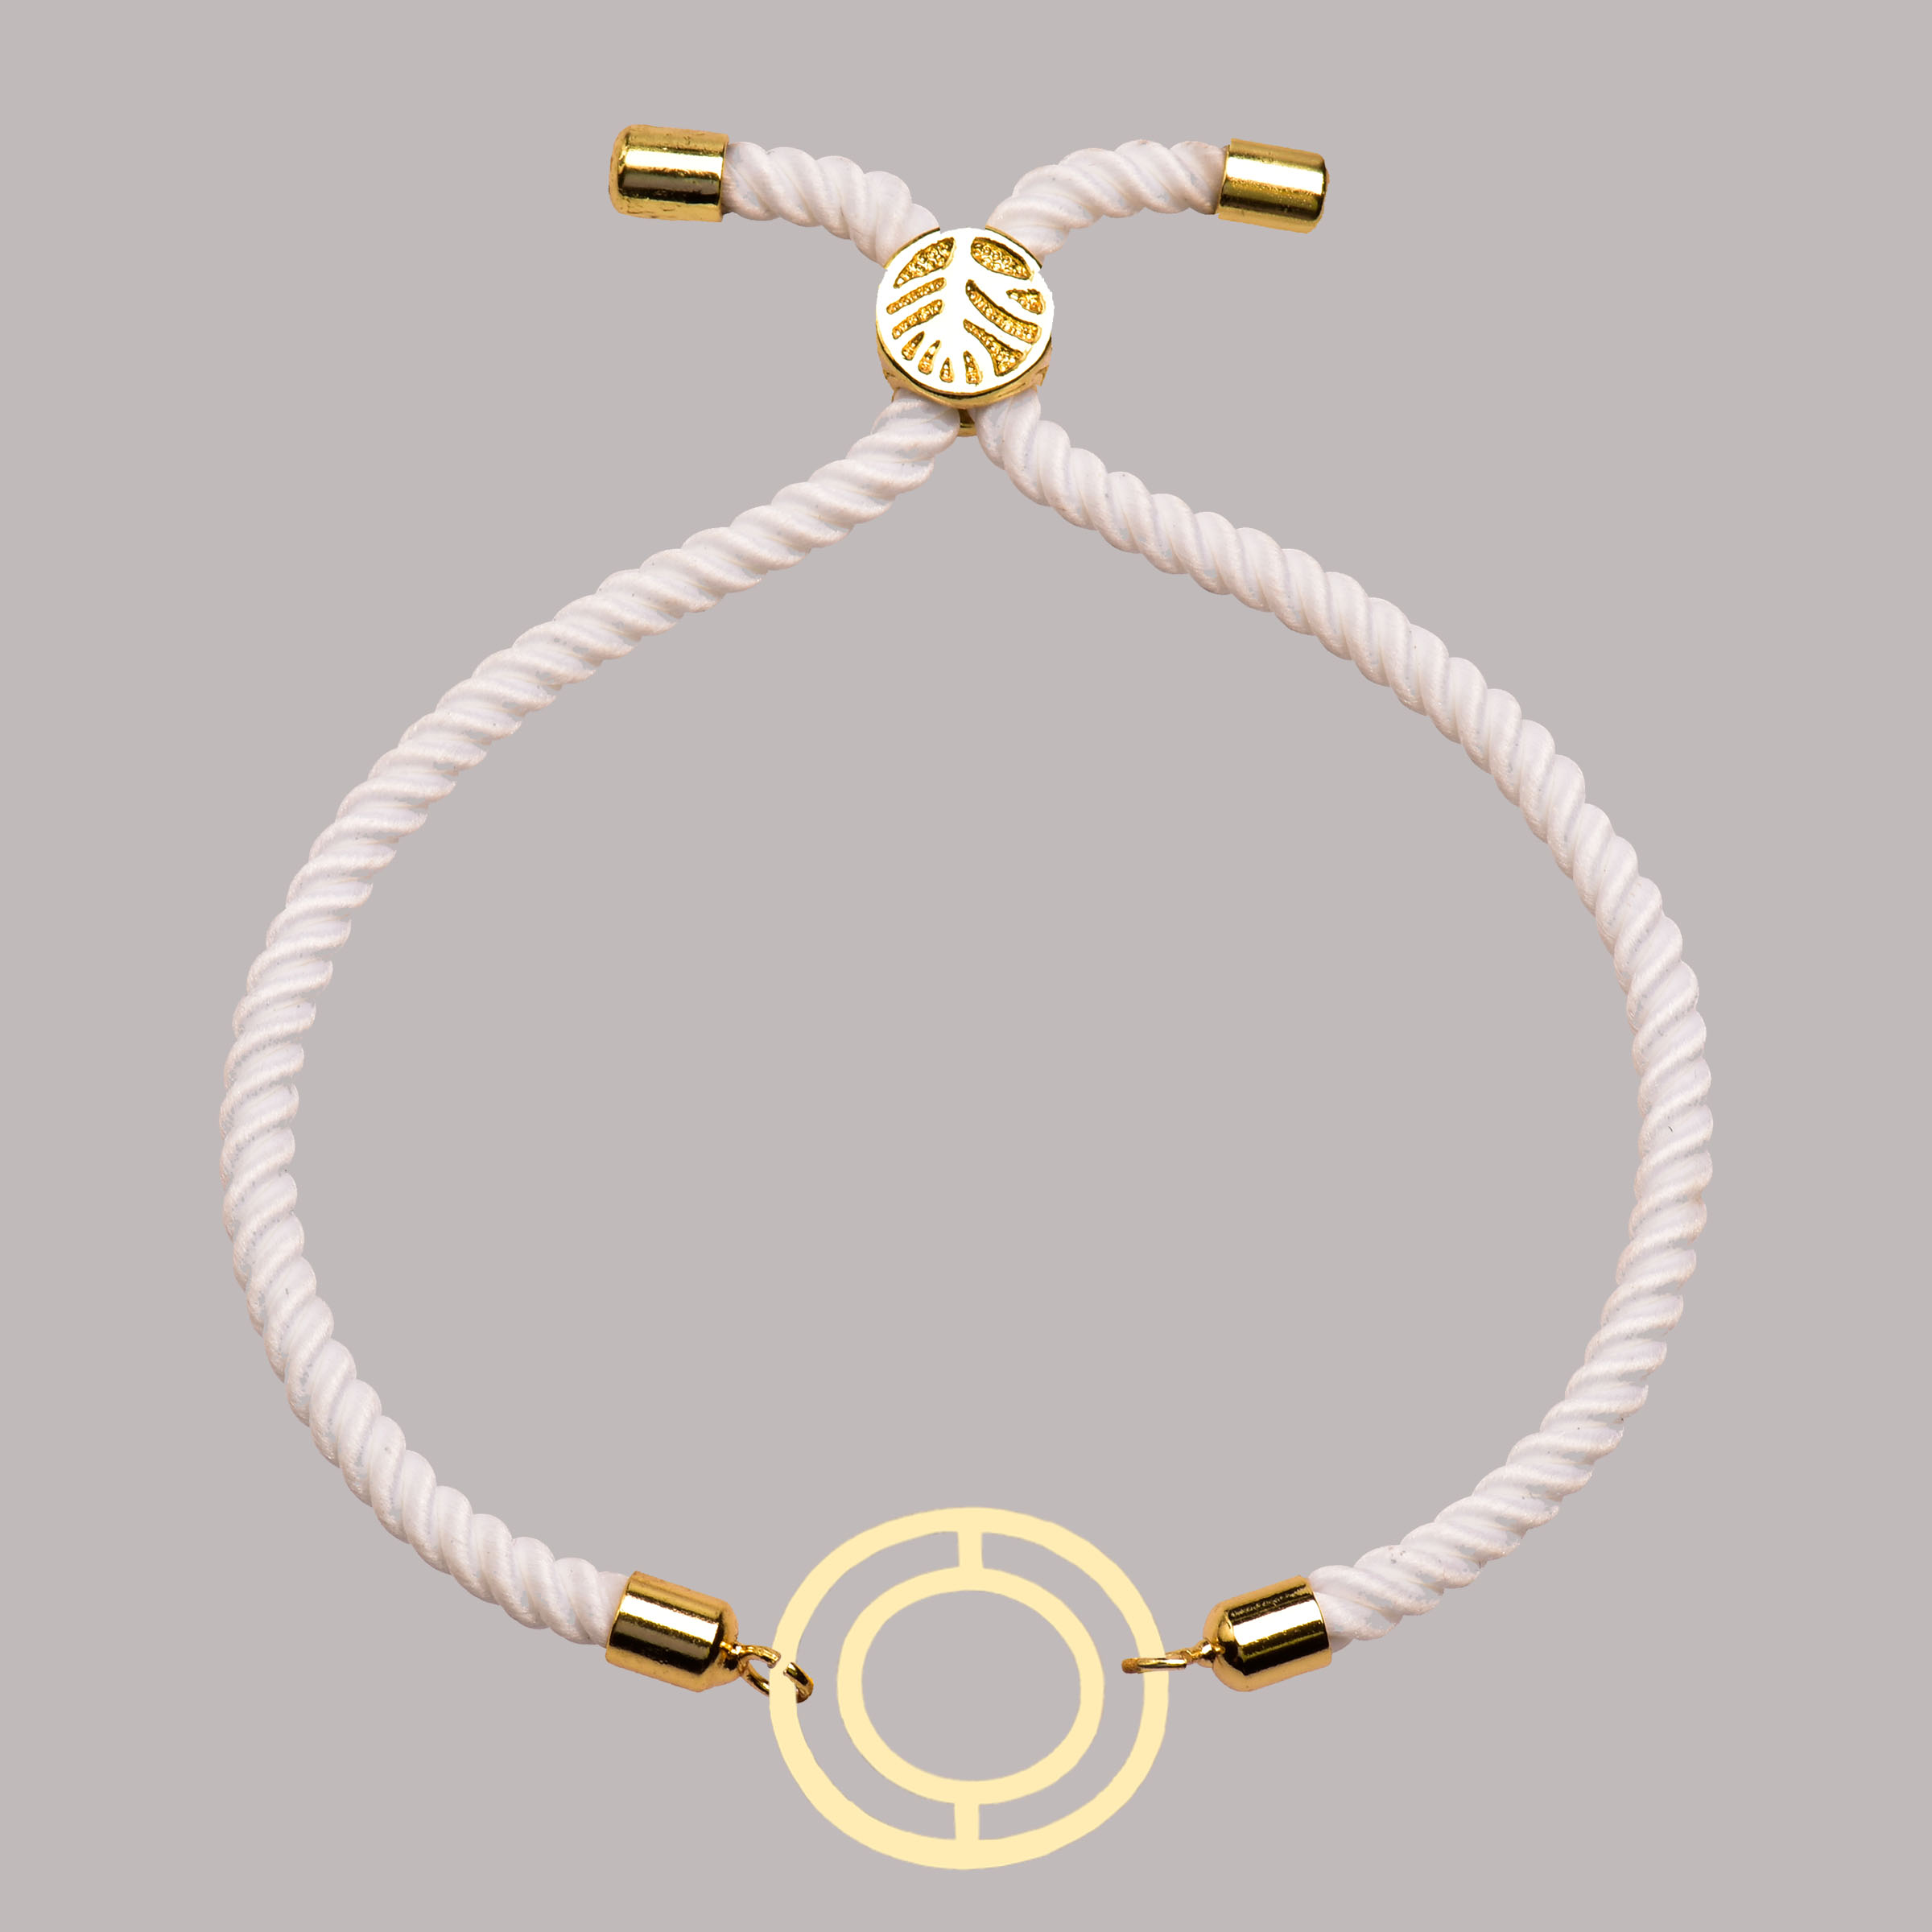 دستبند طلا 18 عیار زنانه کرابو طرح دایره مدل Kr102232 -  - 1